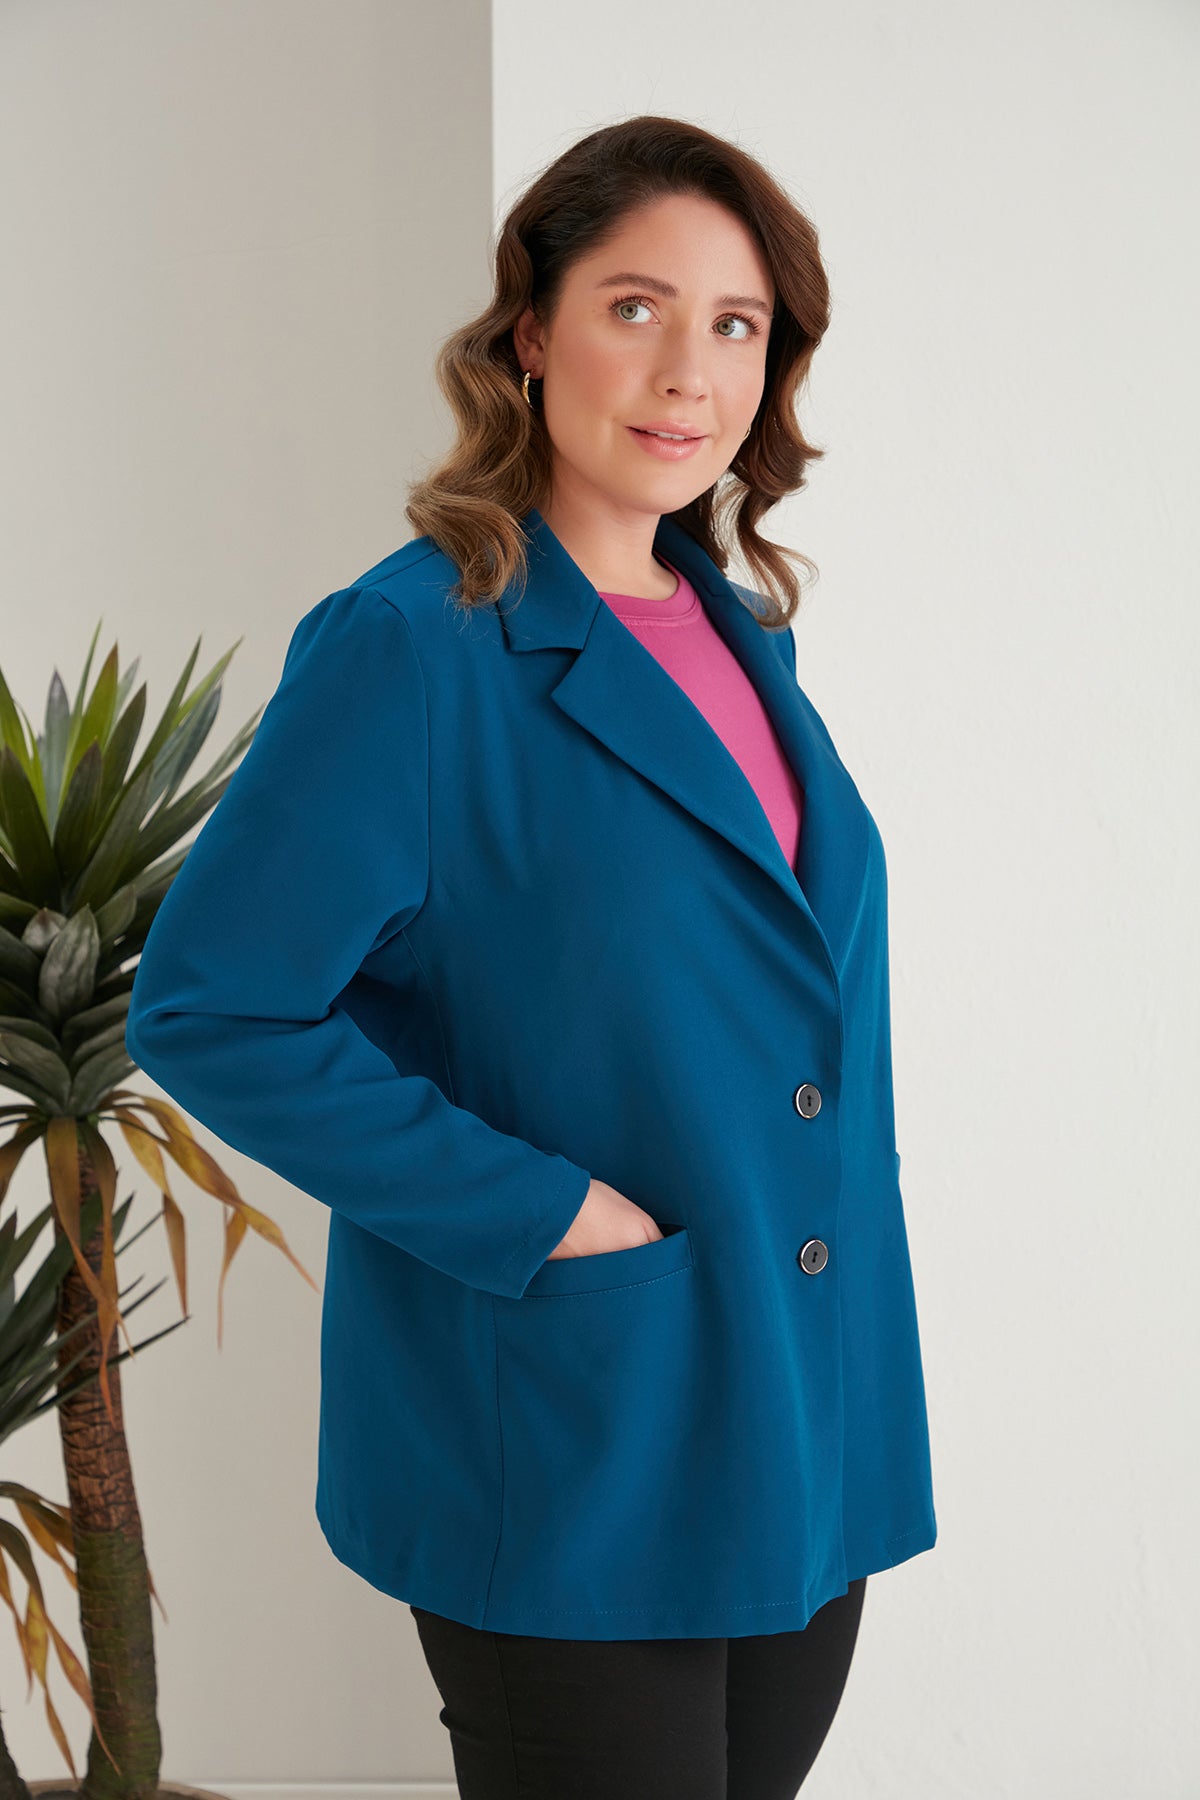 Макси пролетно сако в три цвята - син